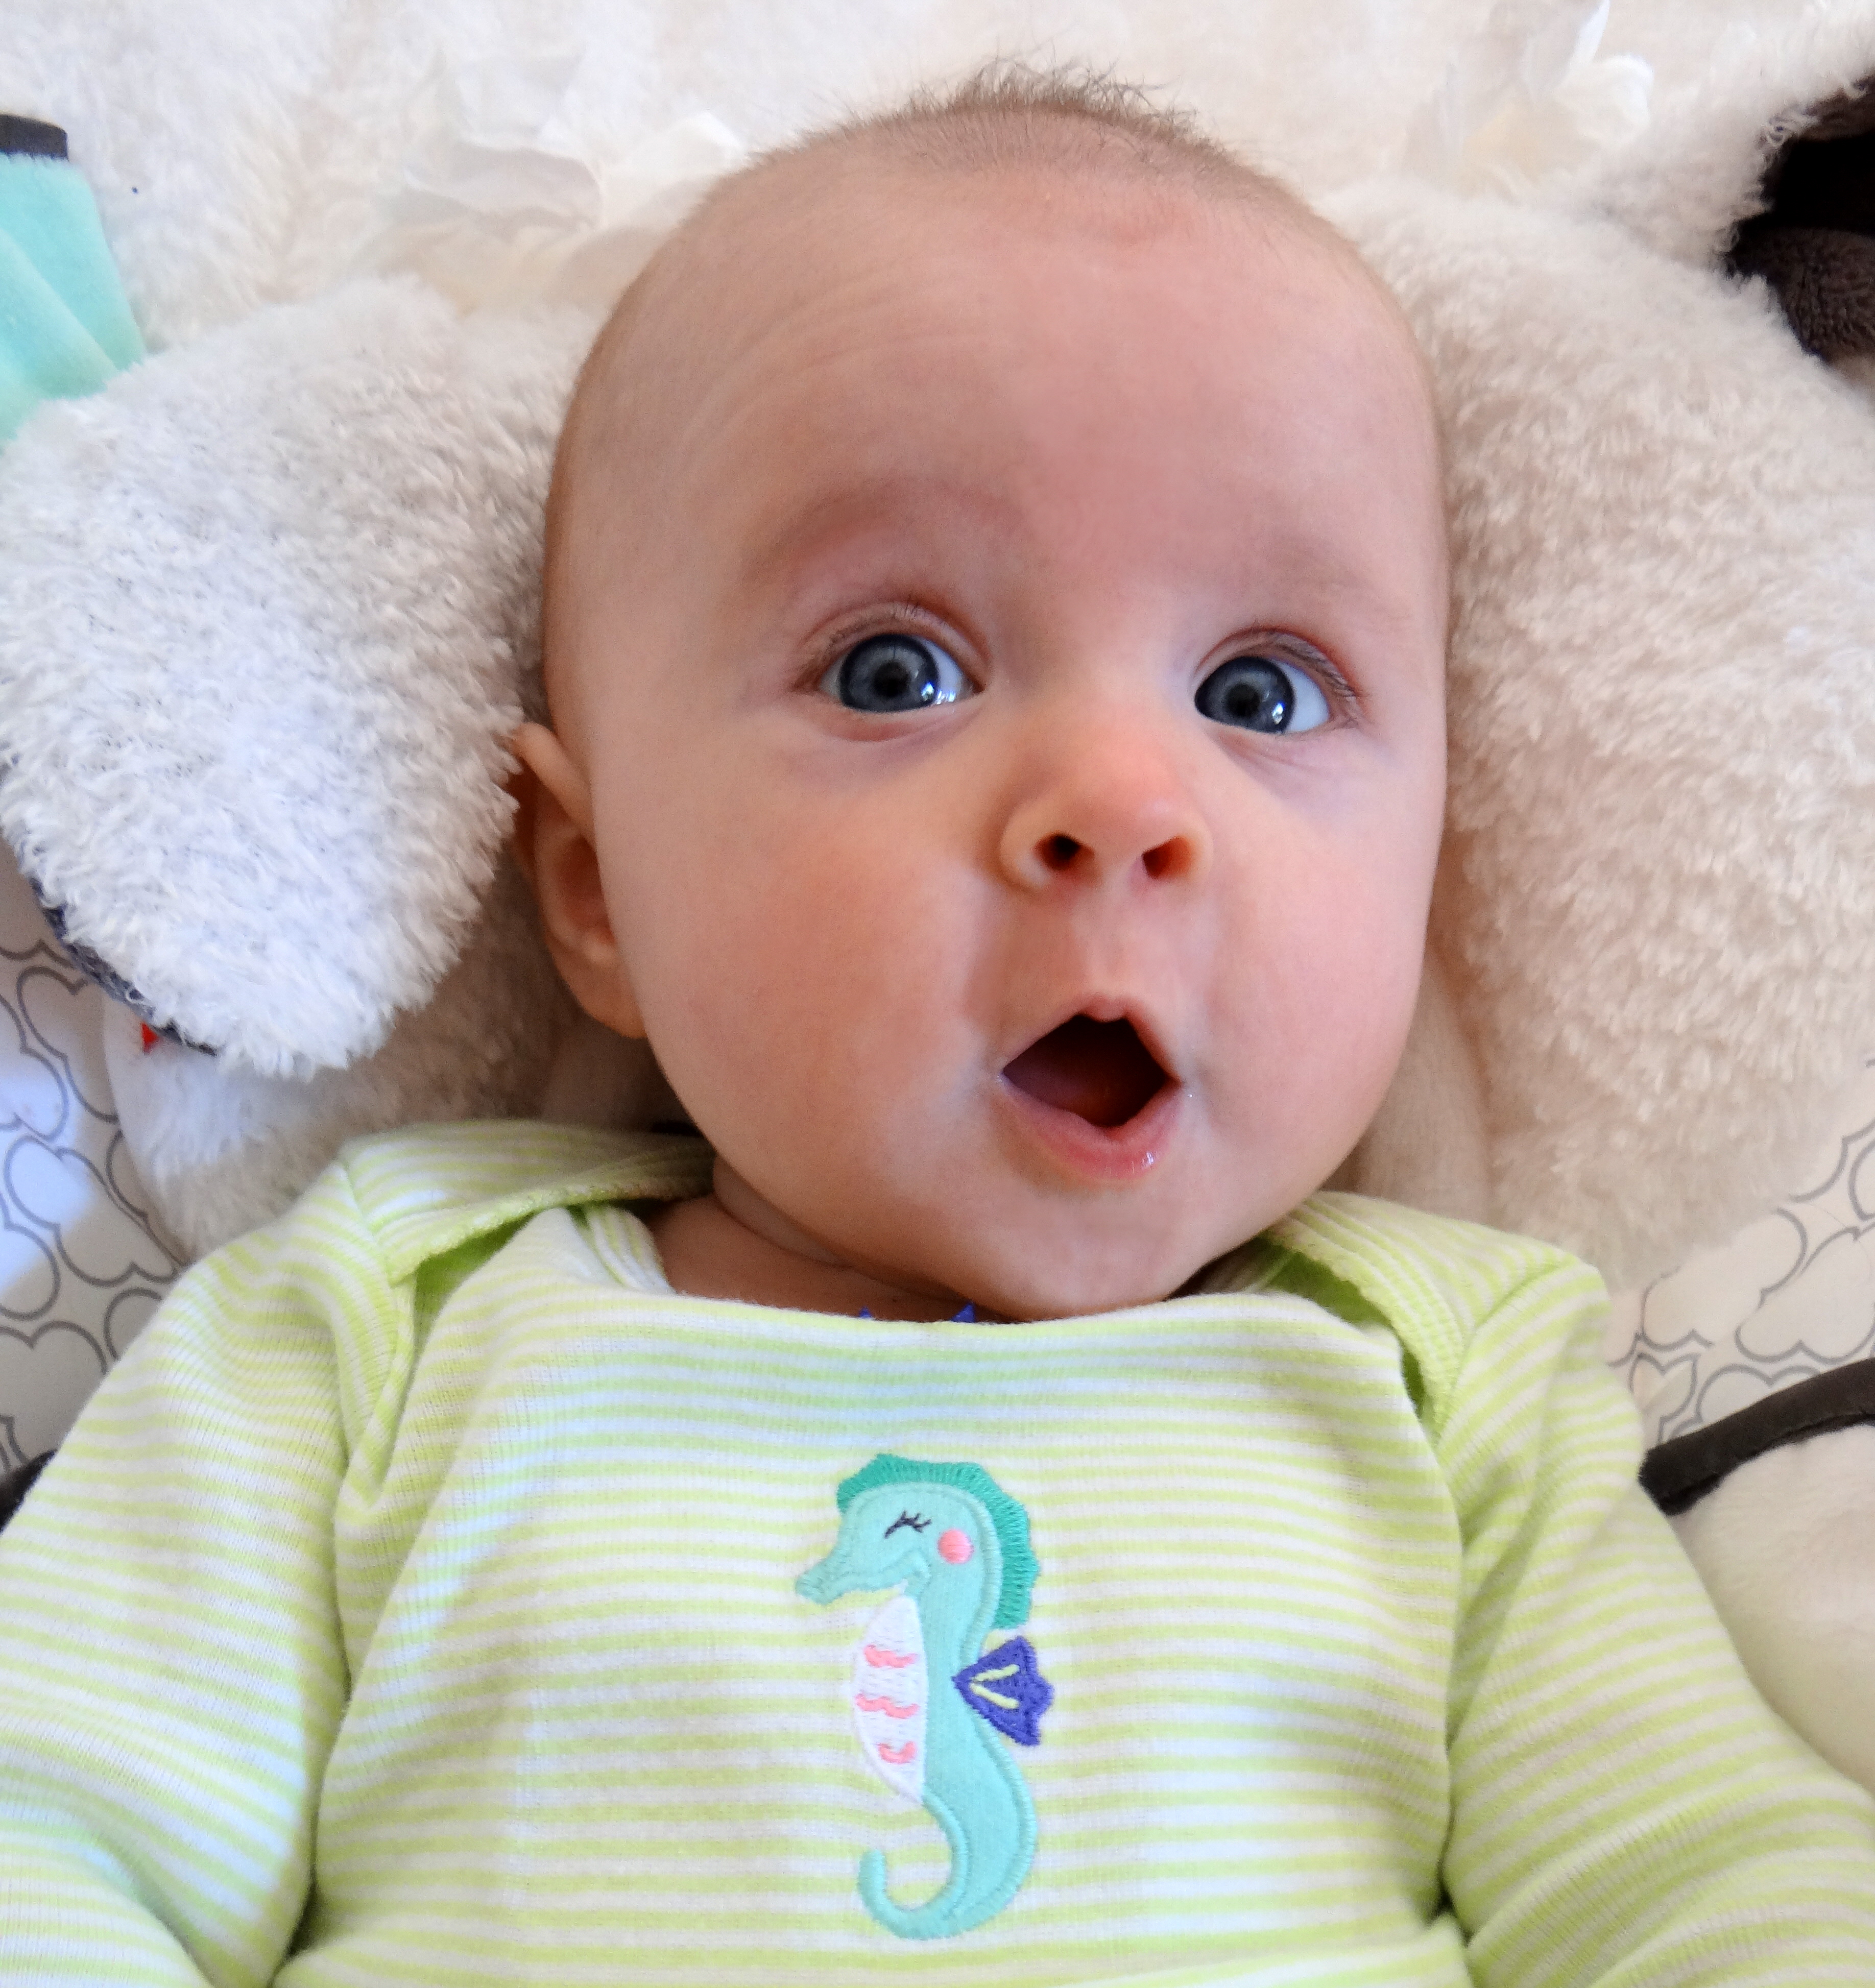 Shocked baby wearing seahorse shirt